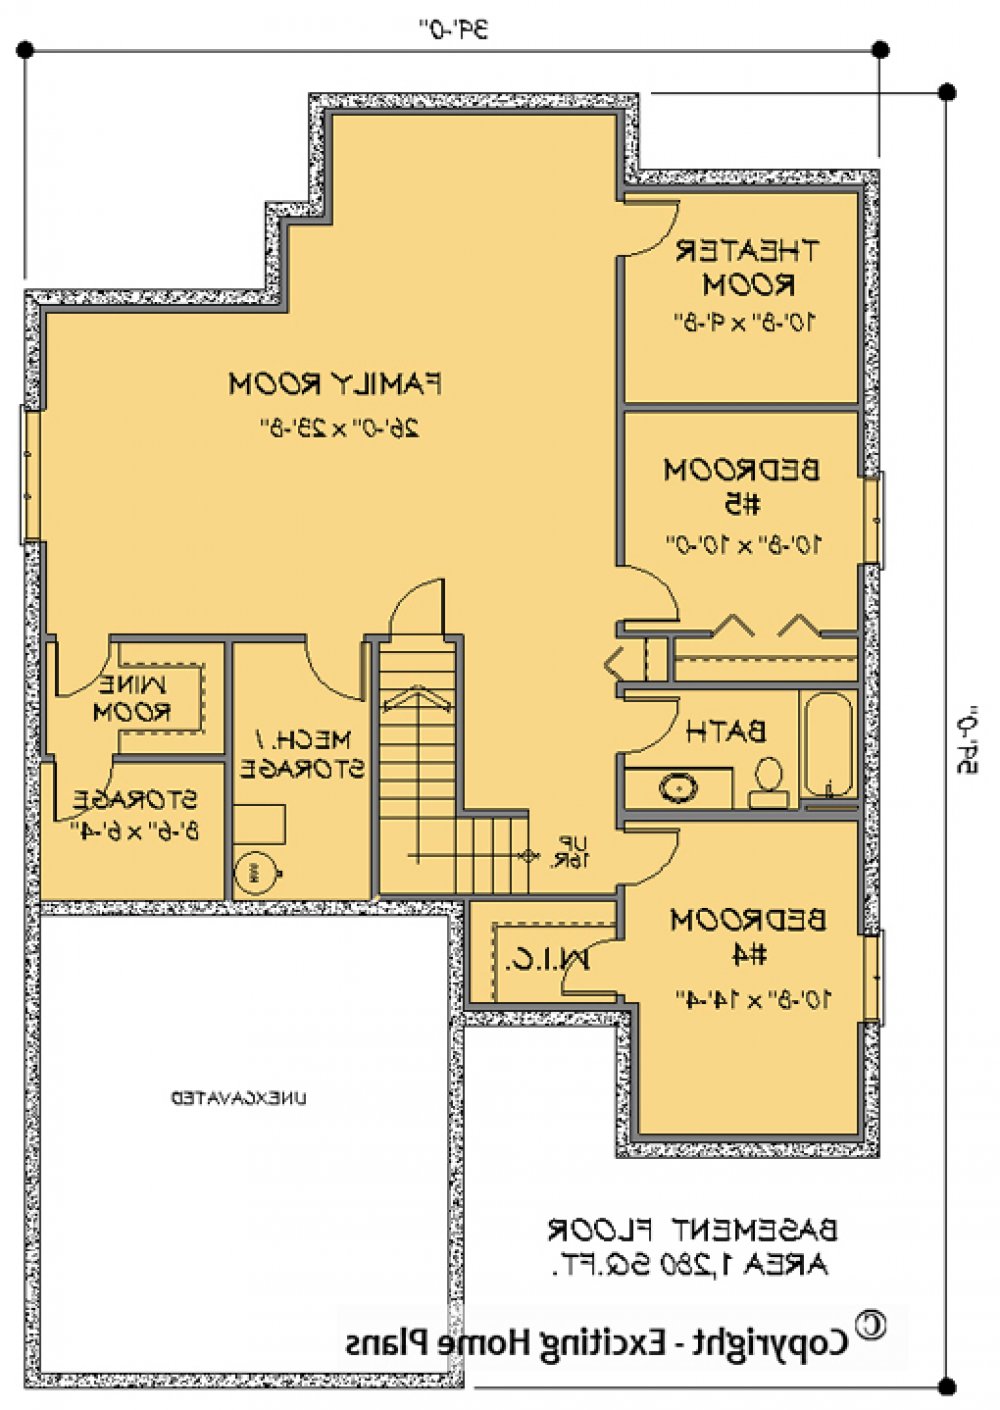 House Plan E1069-10 Lower Floor Plan REVERSE